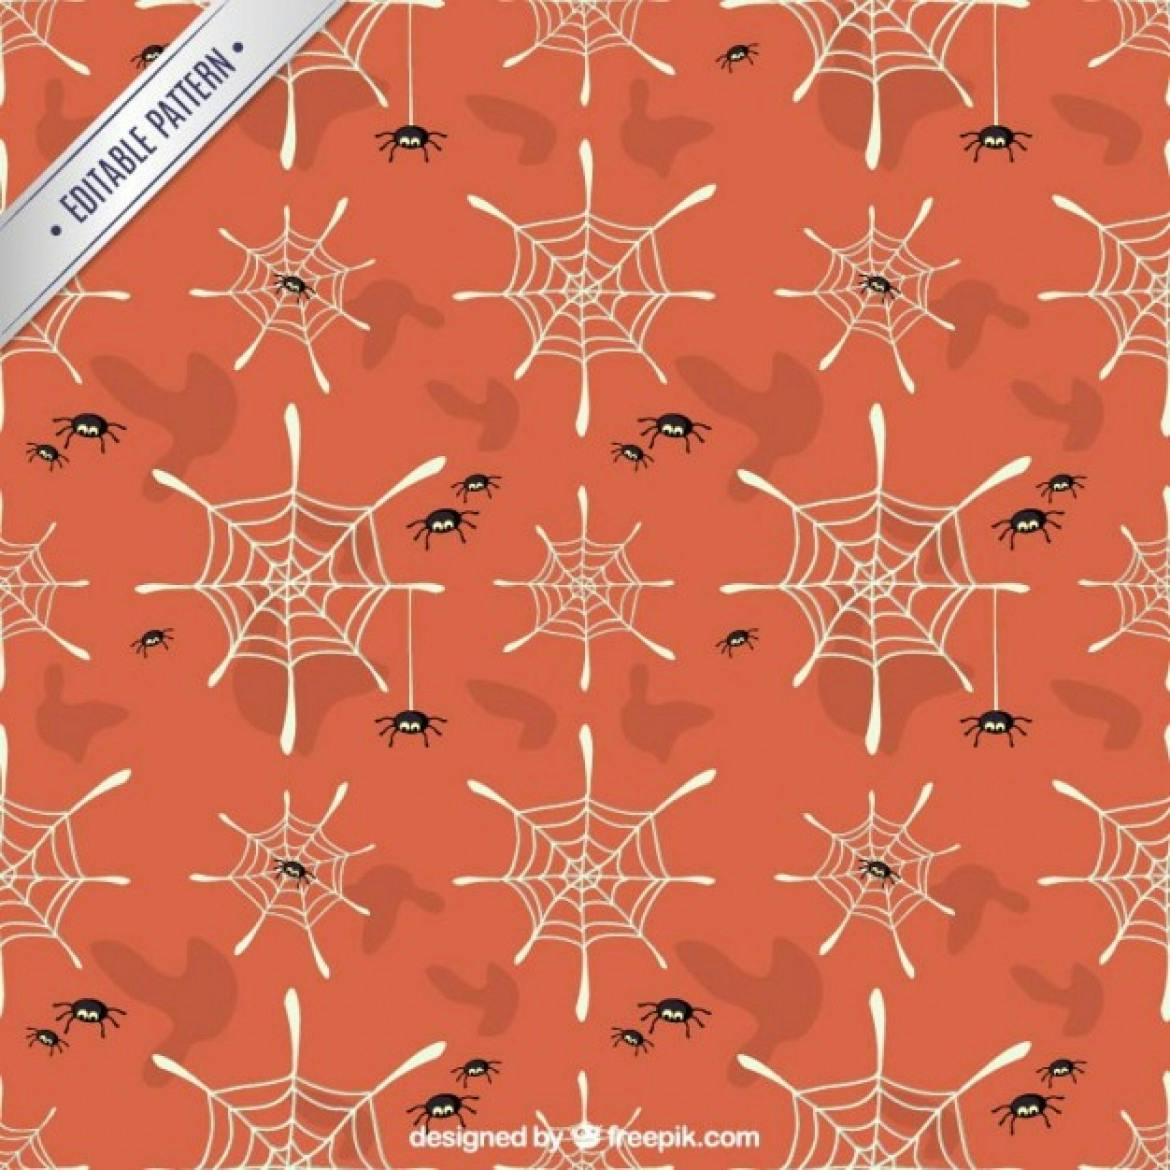 Spider pattern